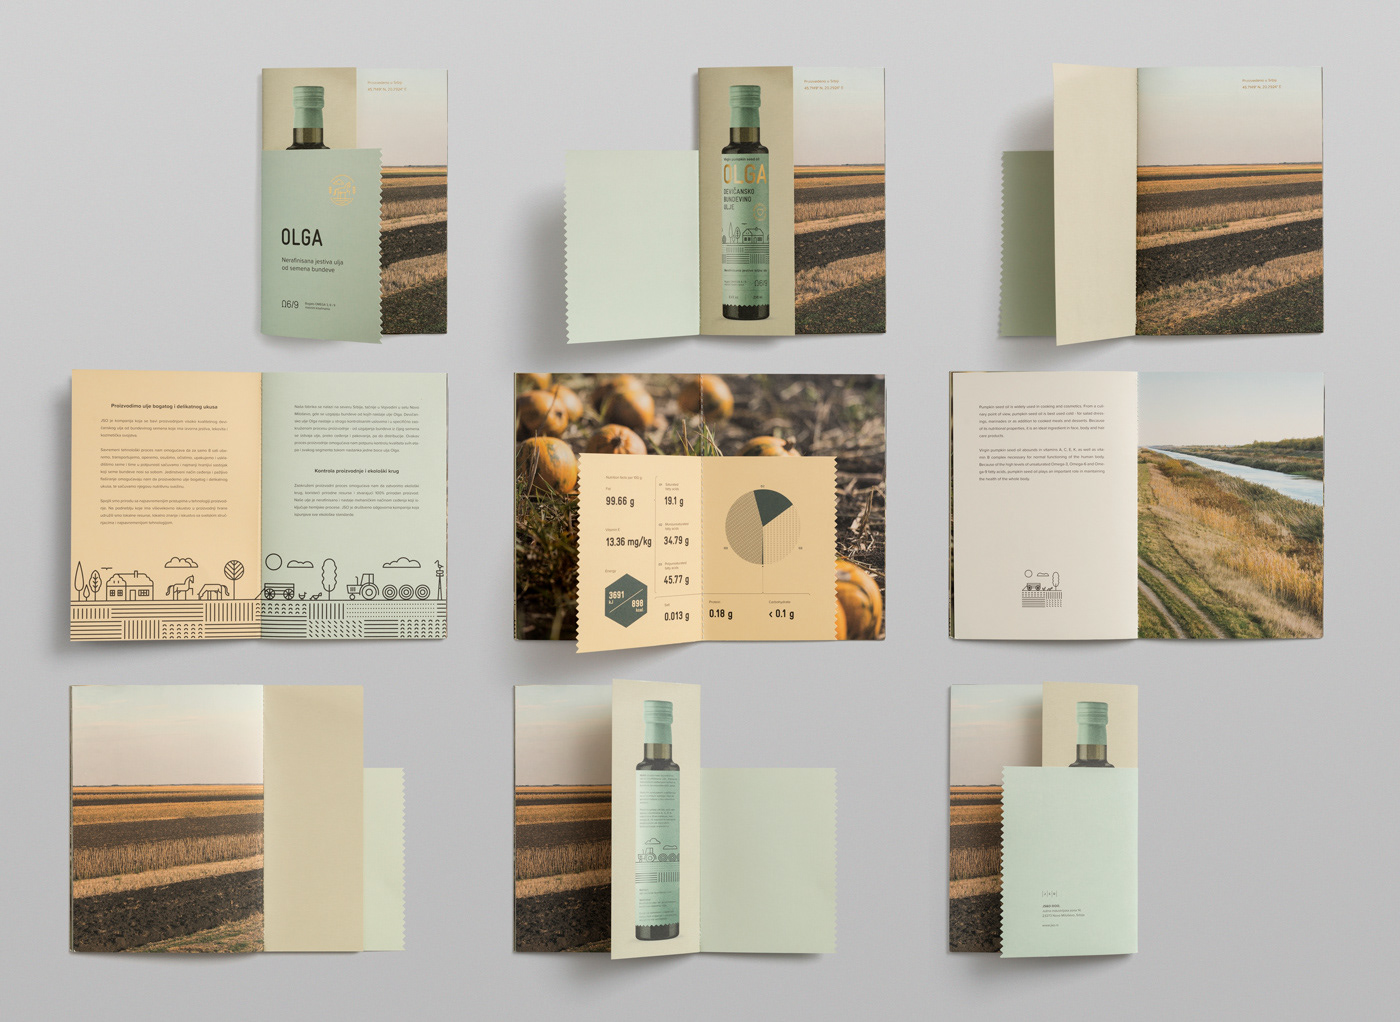 Olga Pumpkin Seed Oil Packaging Design by Metaklinika